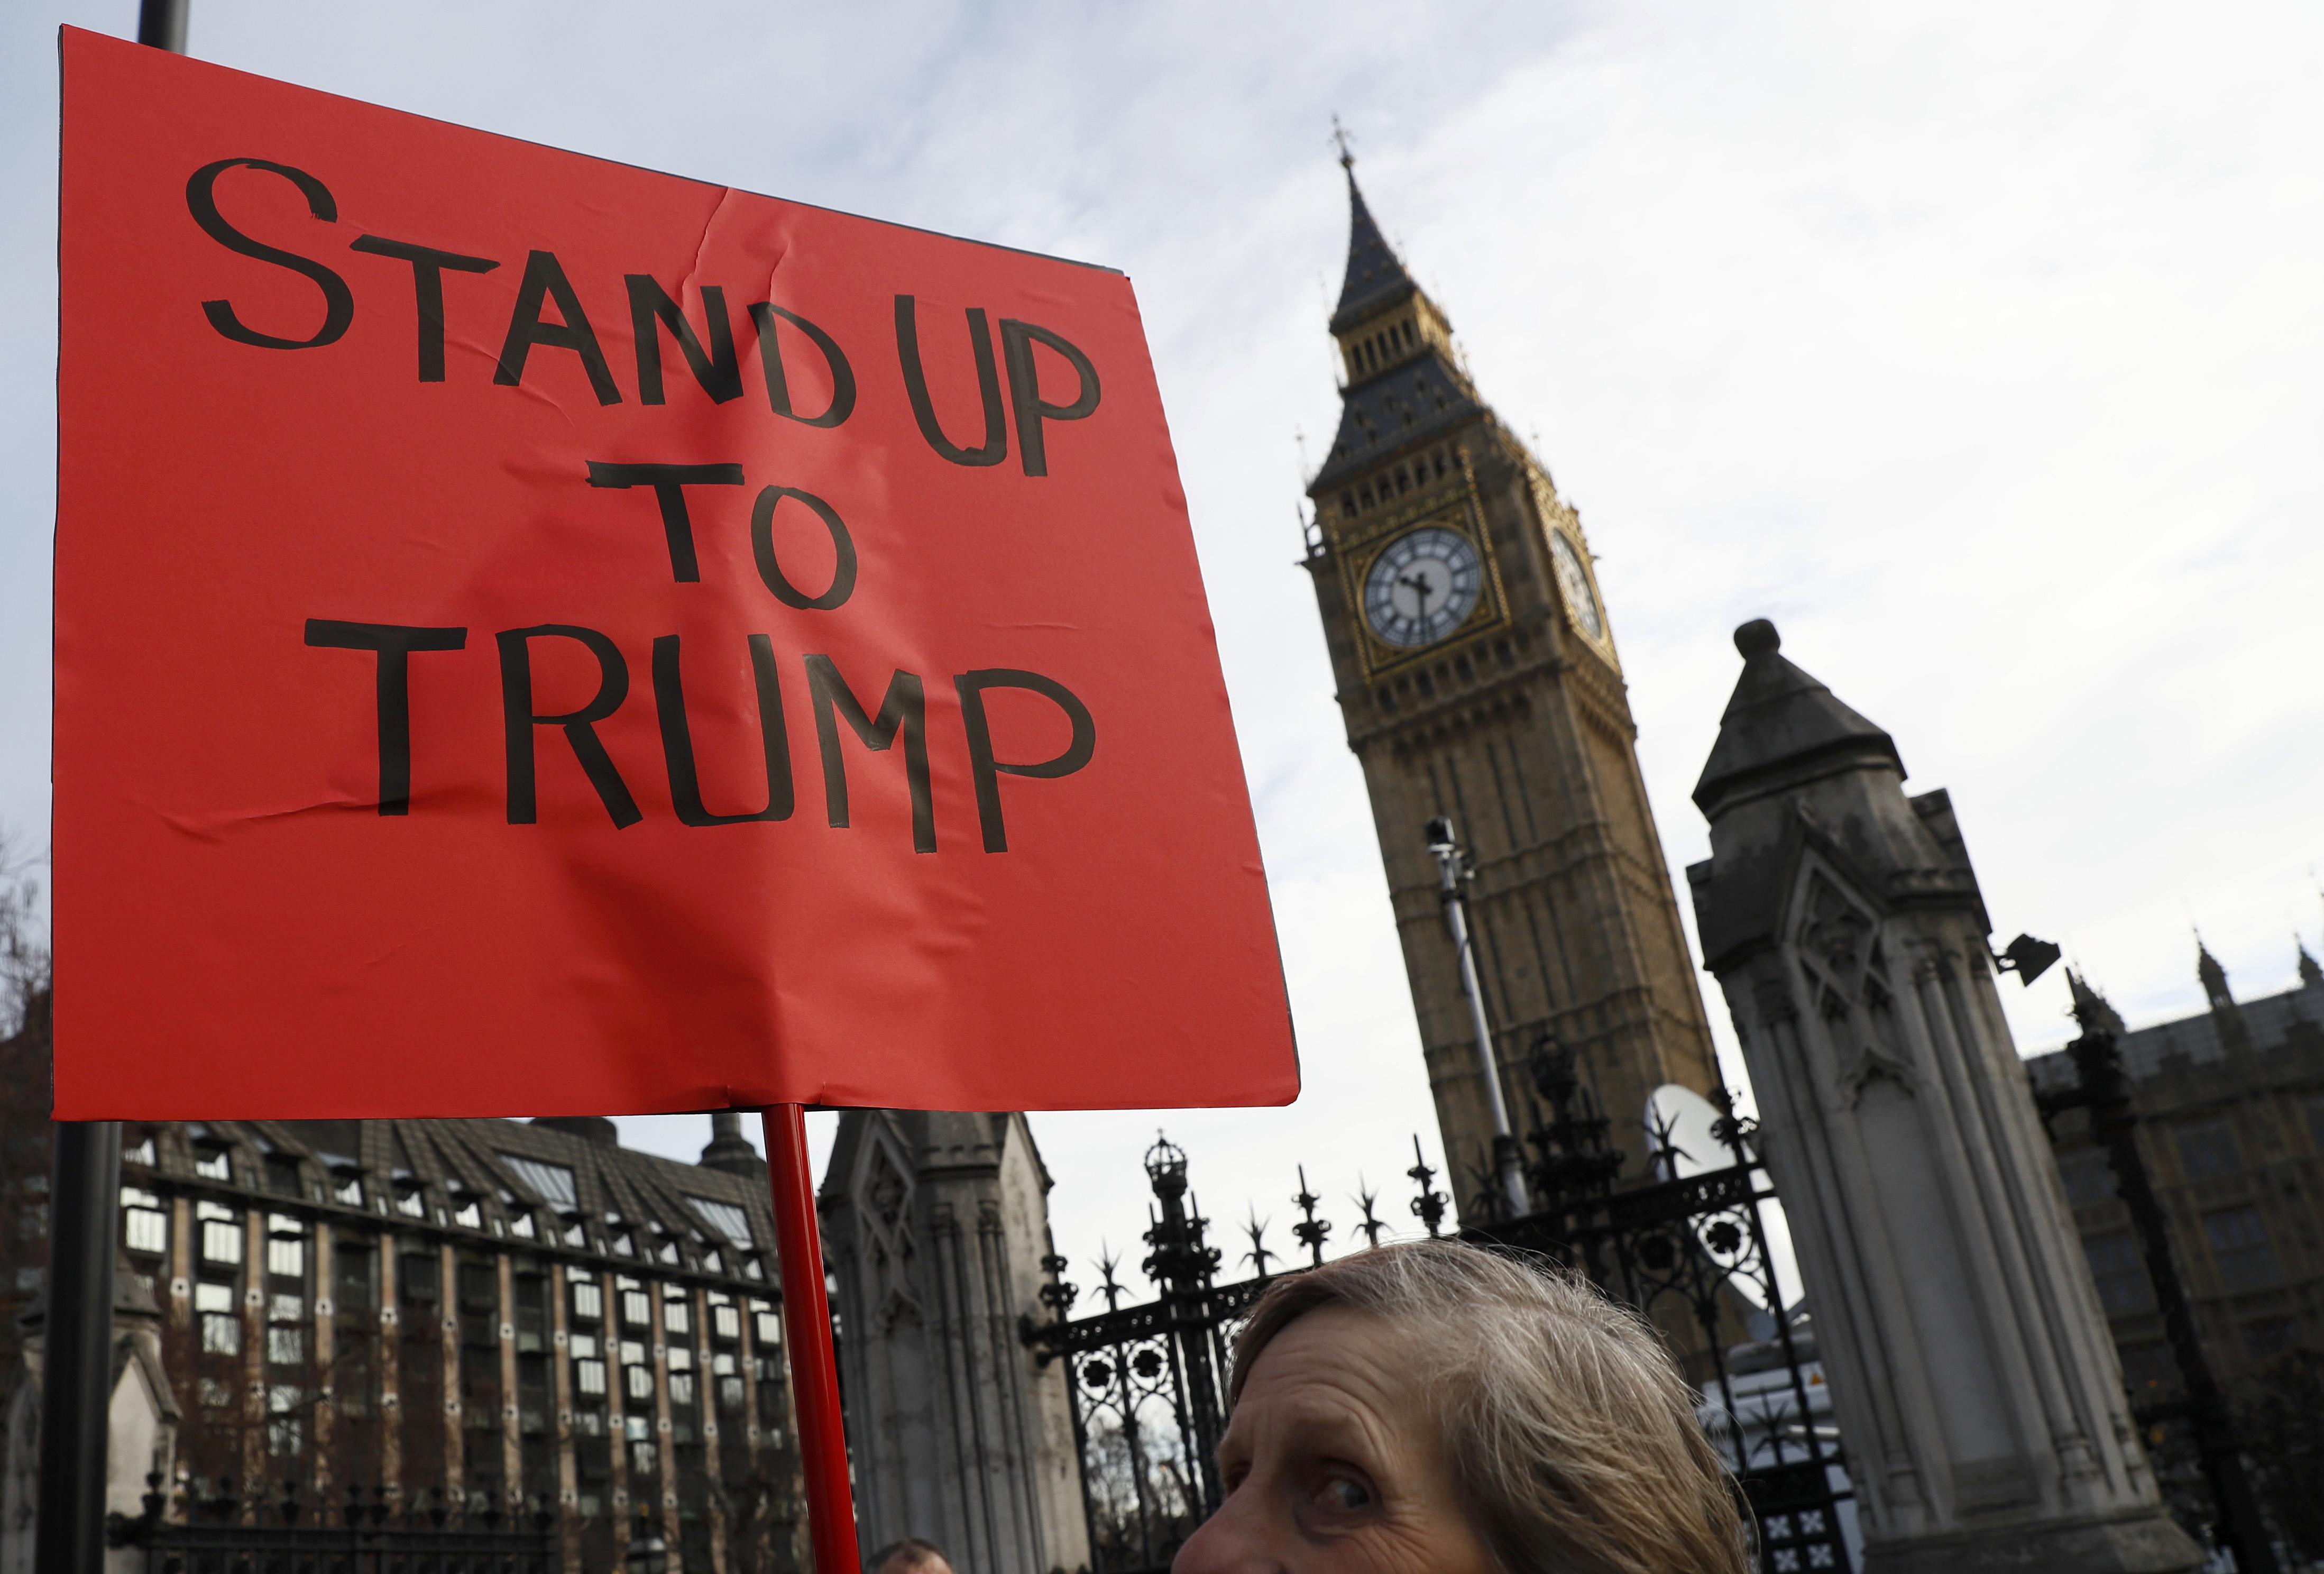 Αντιδράσεις για την επίσκεψη Τραμπ στη Βρετανία εντός και εκτός Βουλής